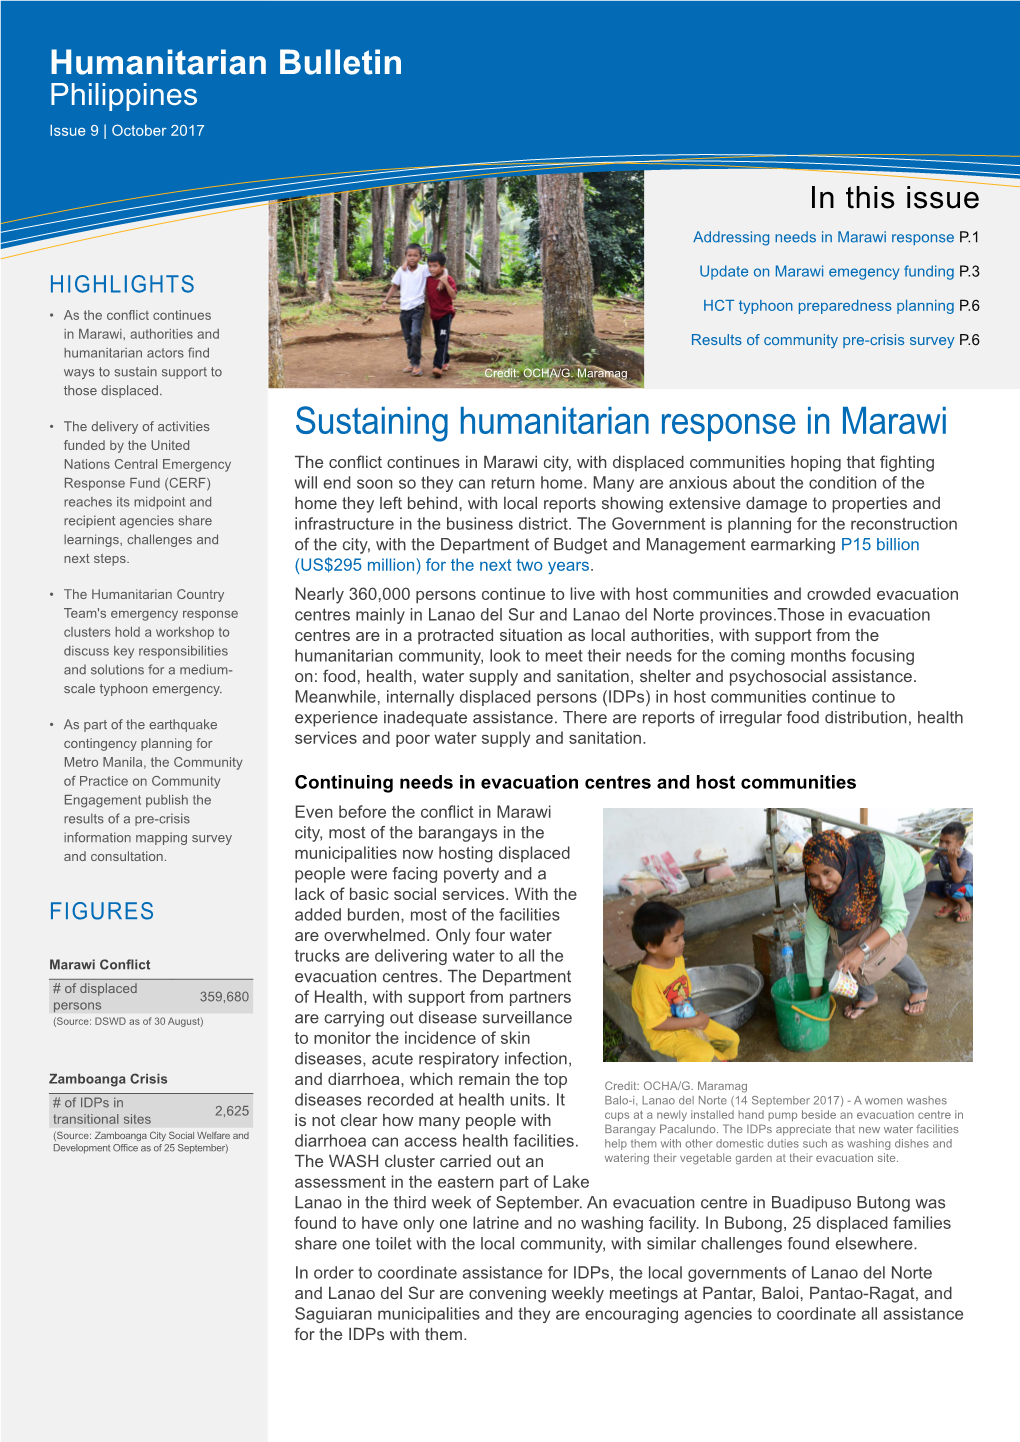 Sustaining Humanitarian Response in Marawi